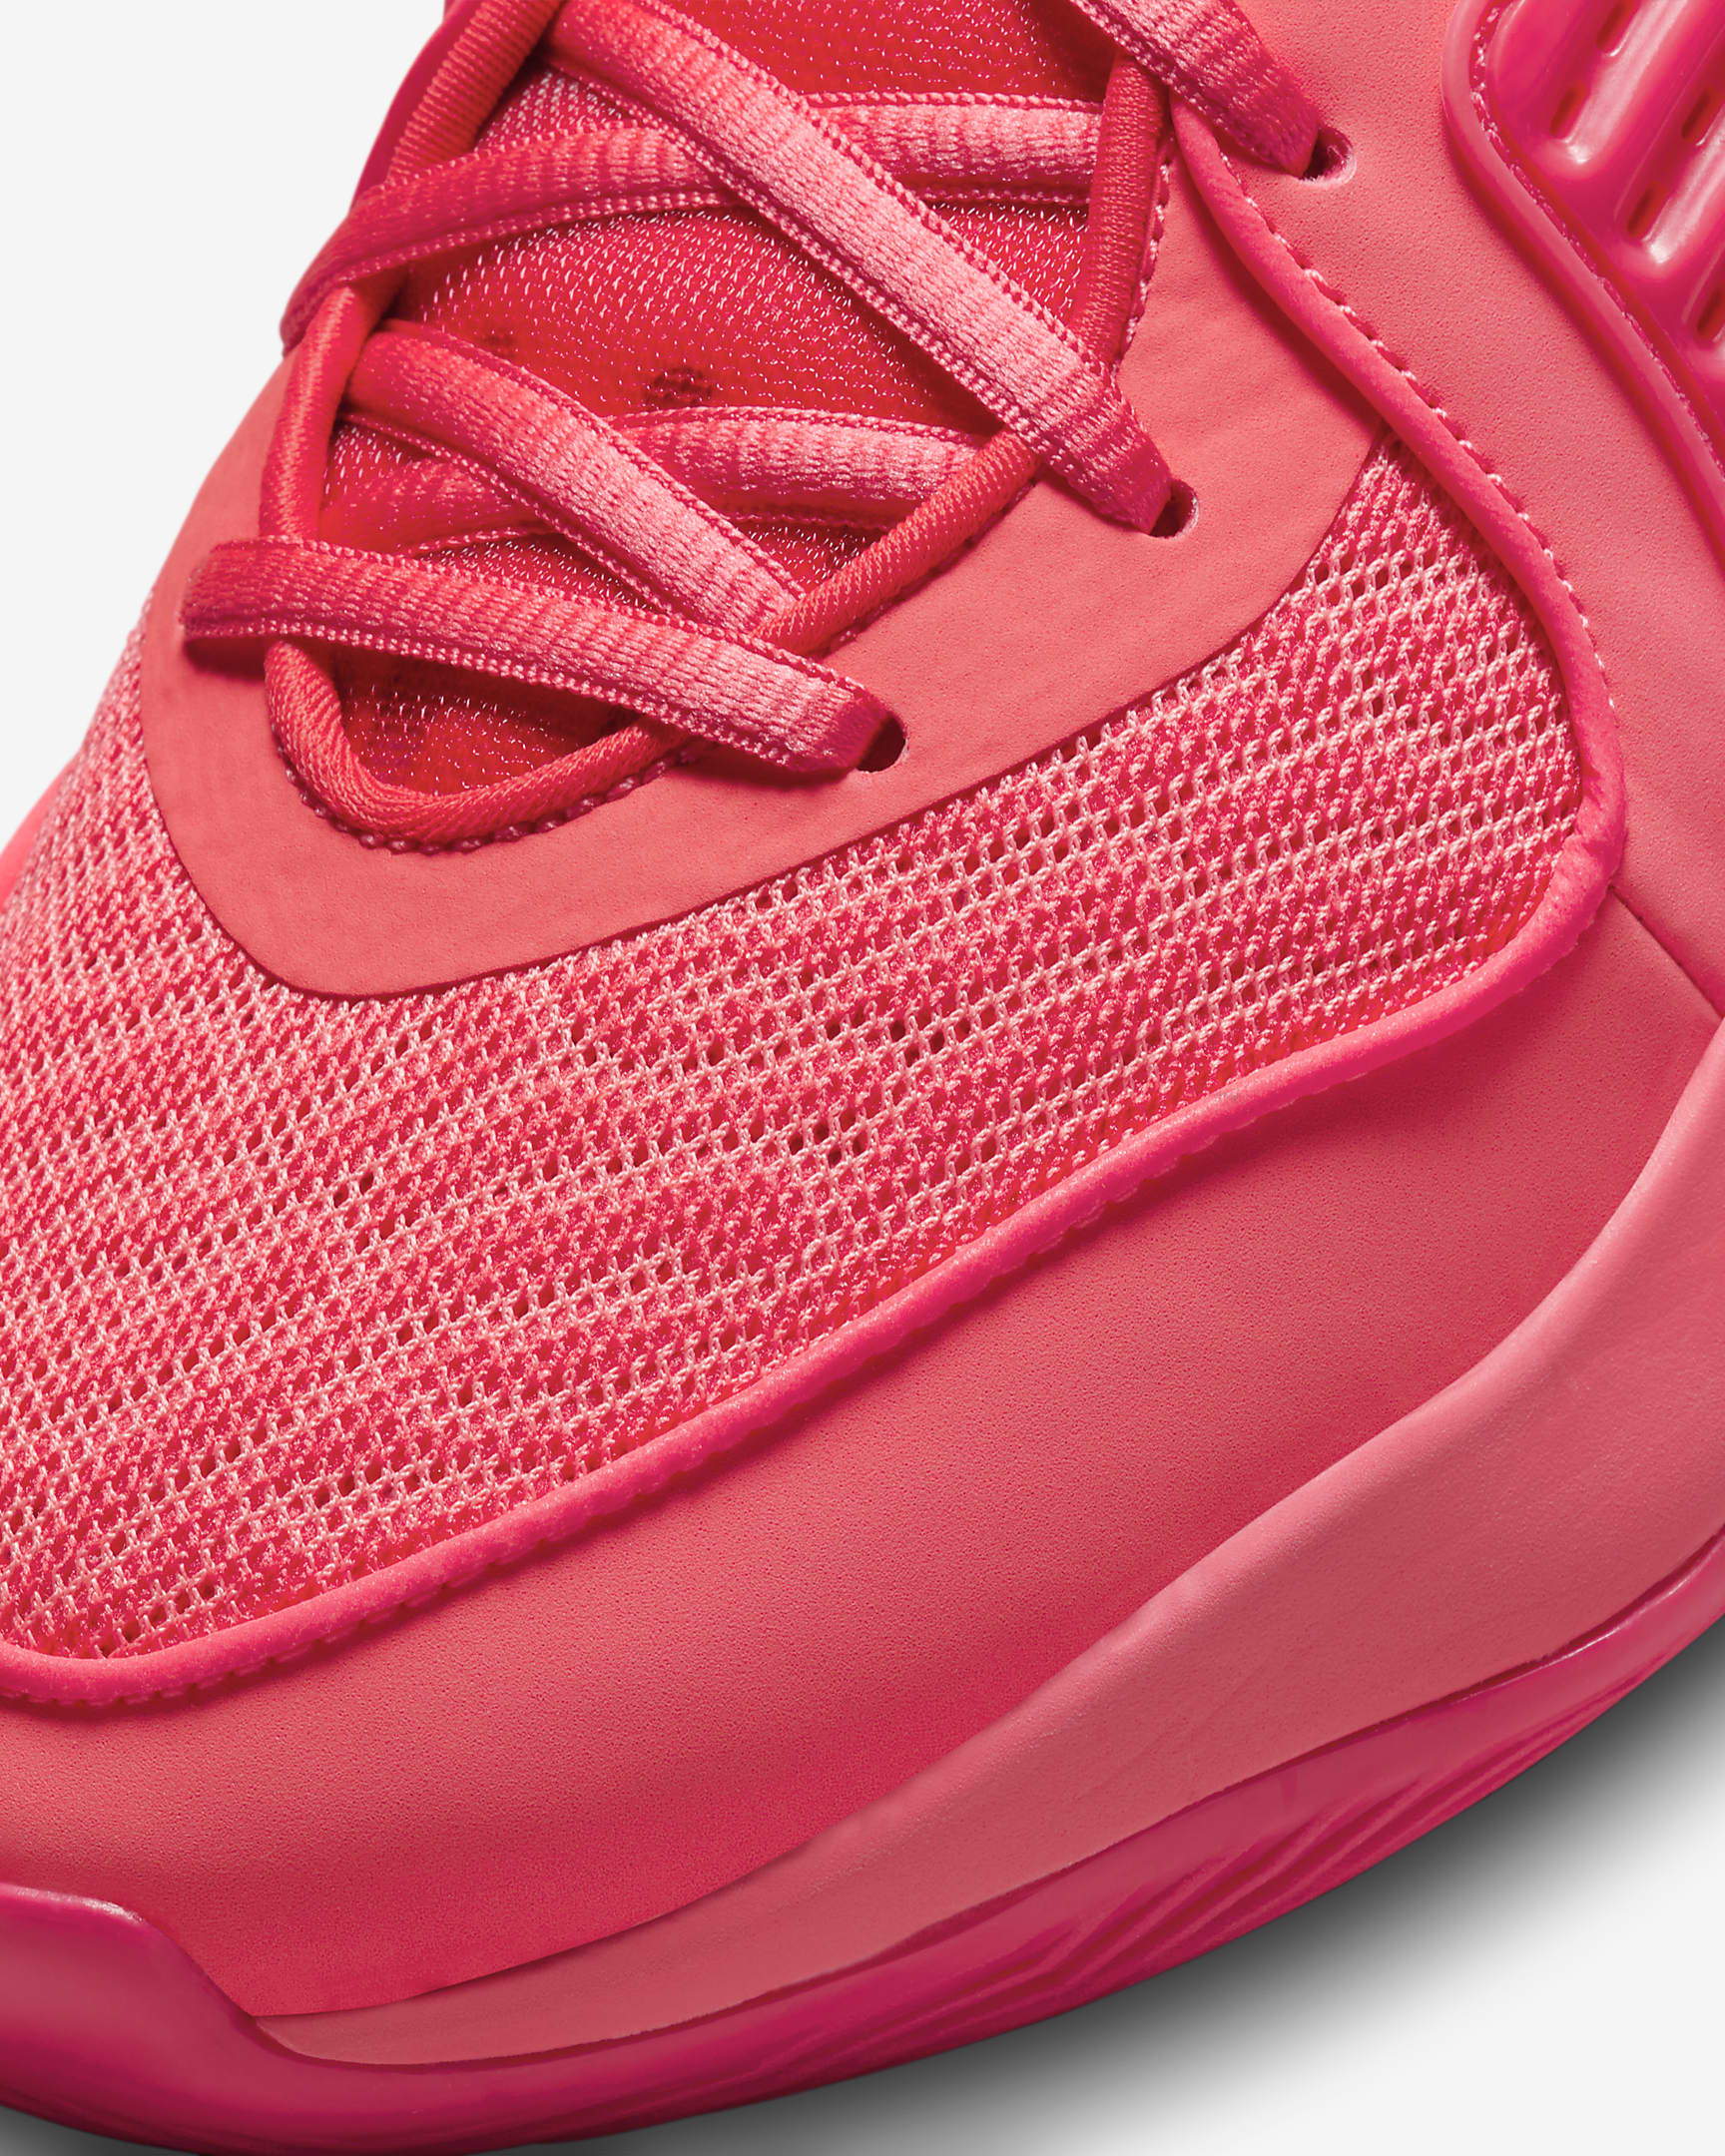 KD16 Basketball Shoes. Nike AU